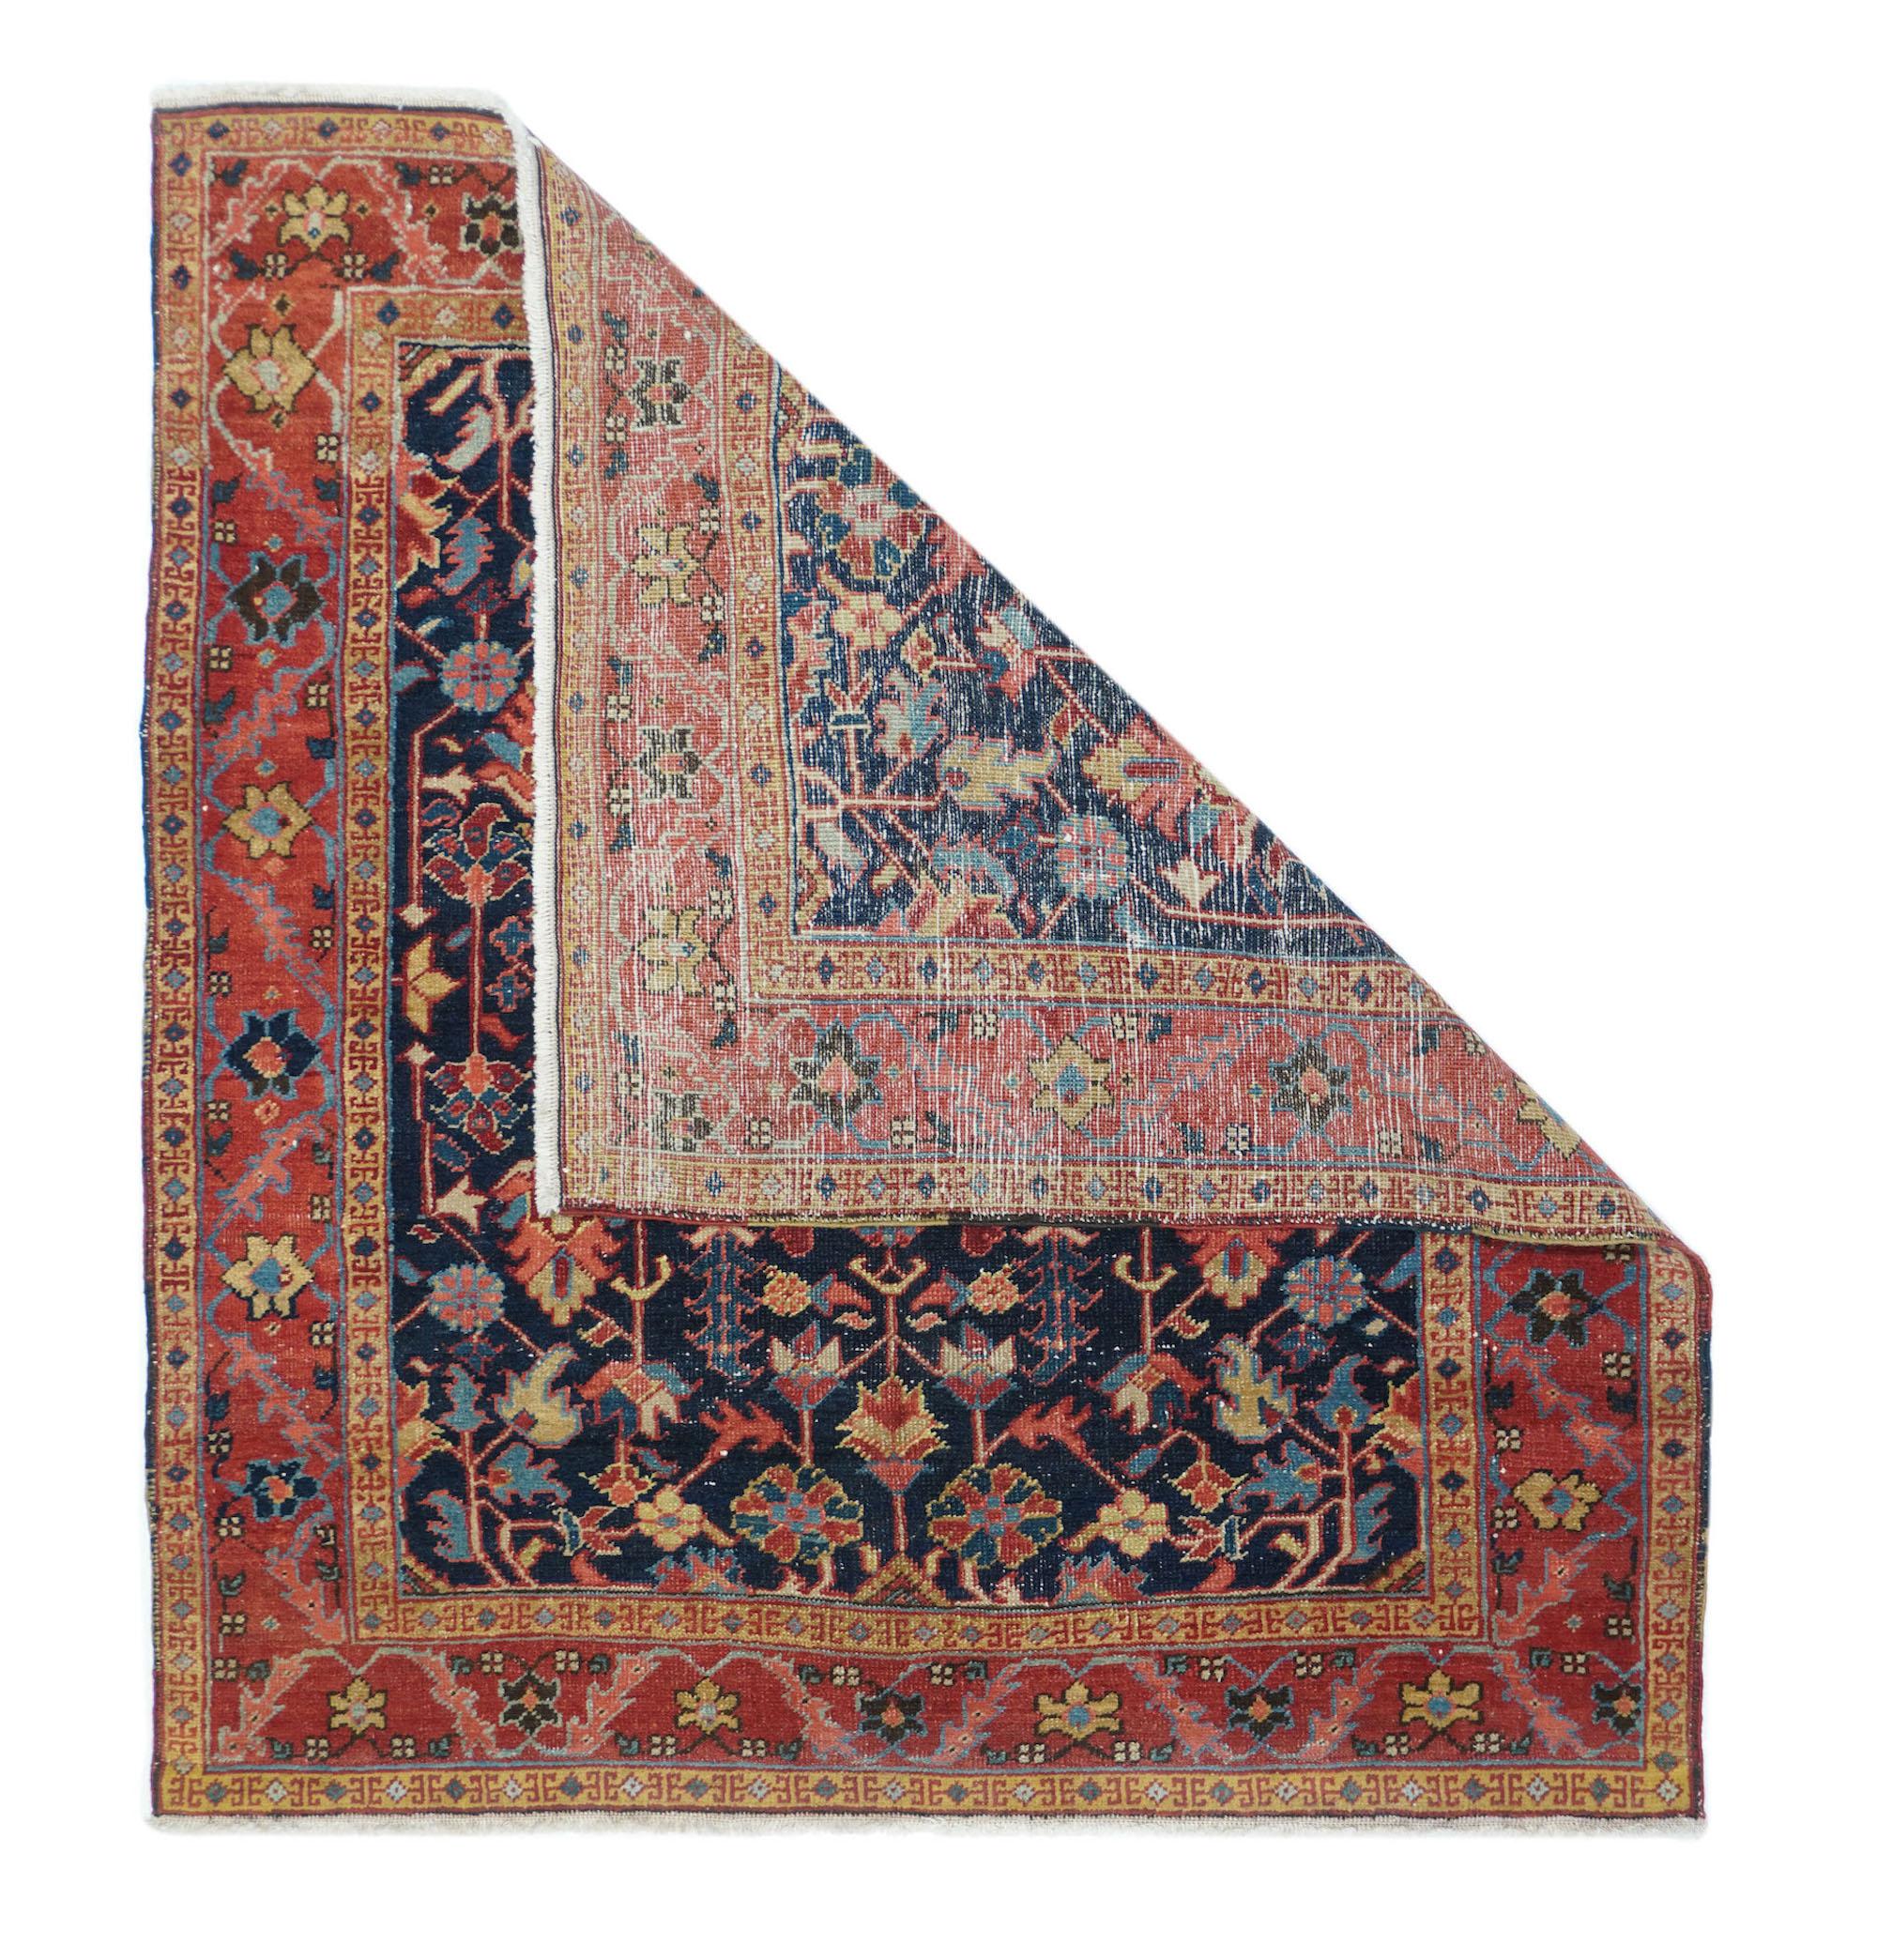 Antique Heriz rug measures: 4'4'' x 5'.